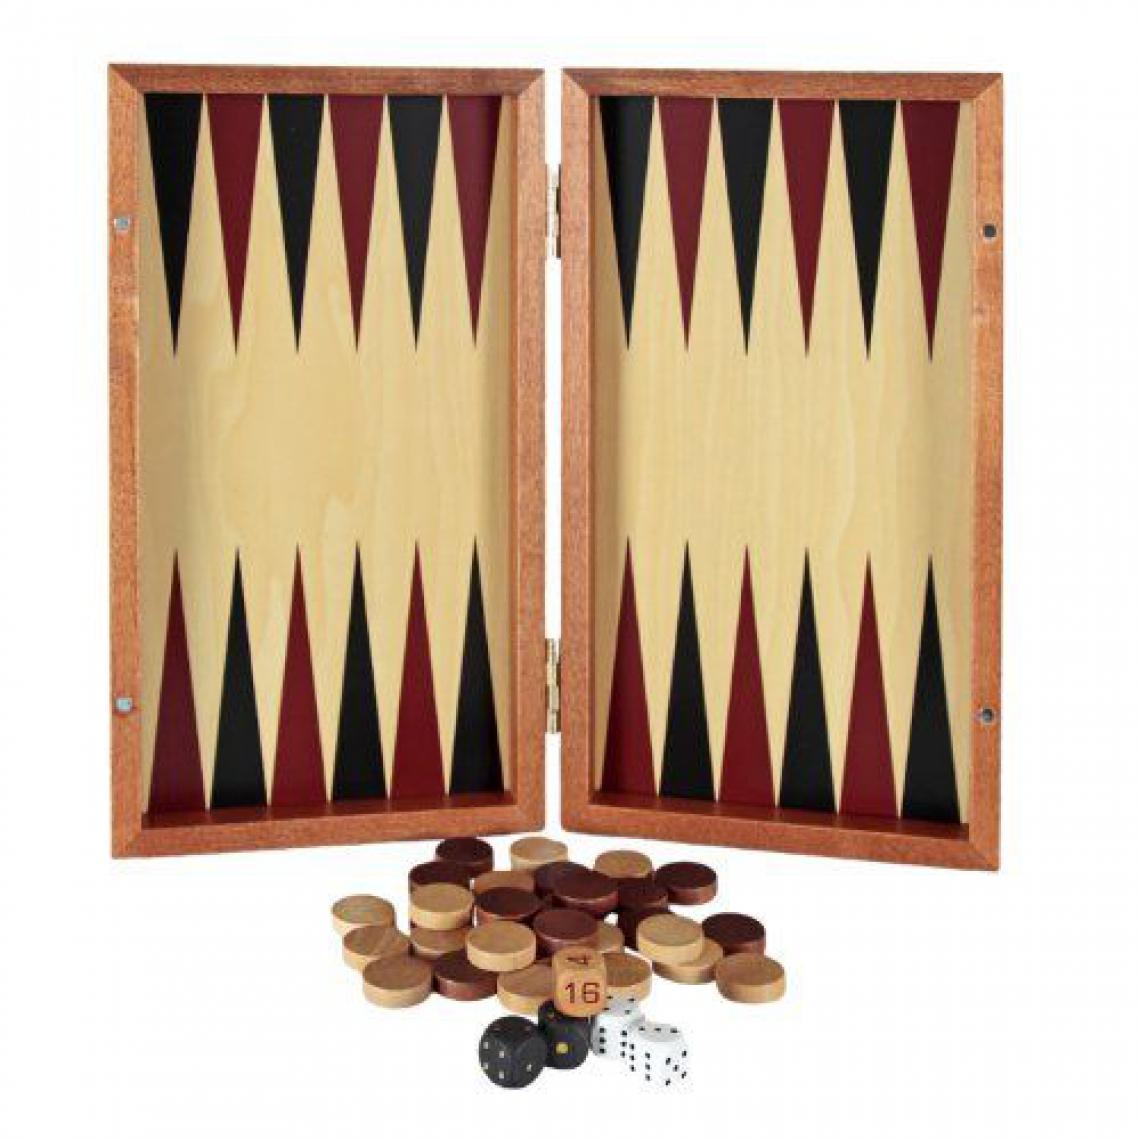 Inconnu - Aquamarine Games – Backgammon de Voyage (compudid sg1019) - Les grands classiques